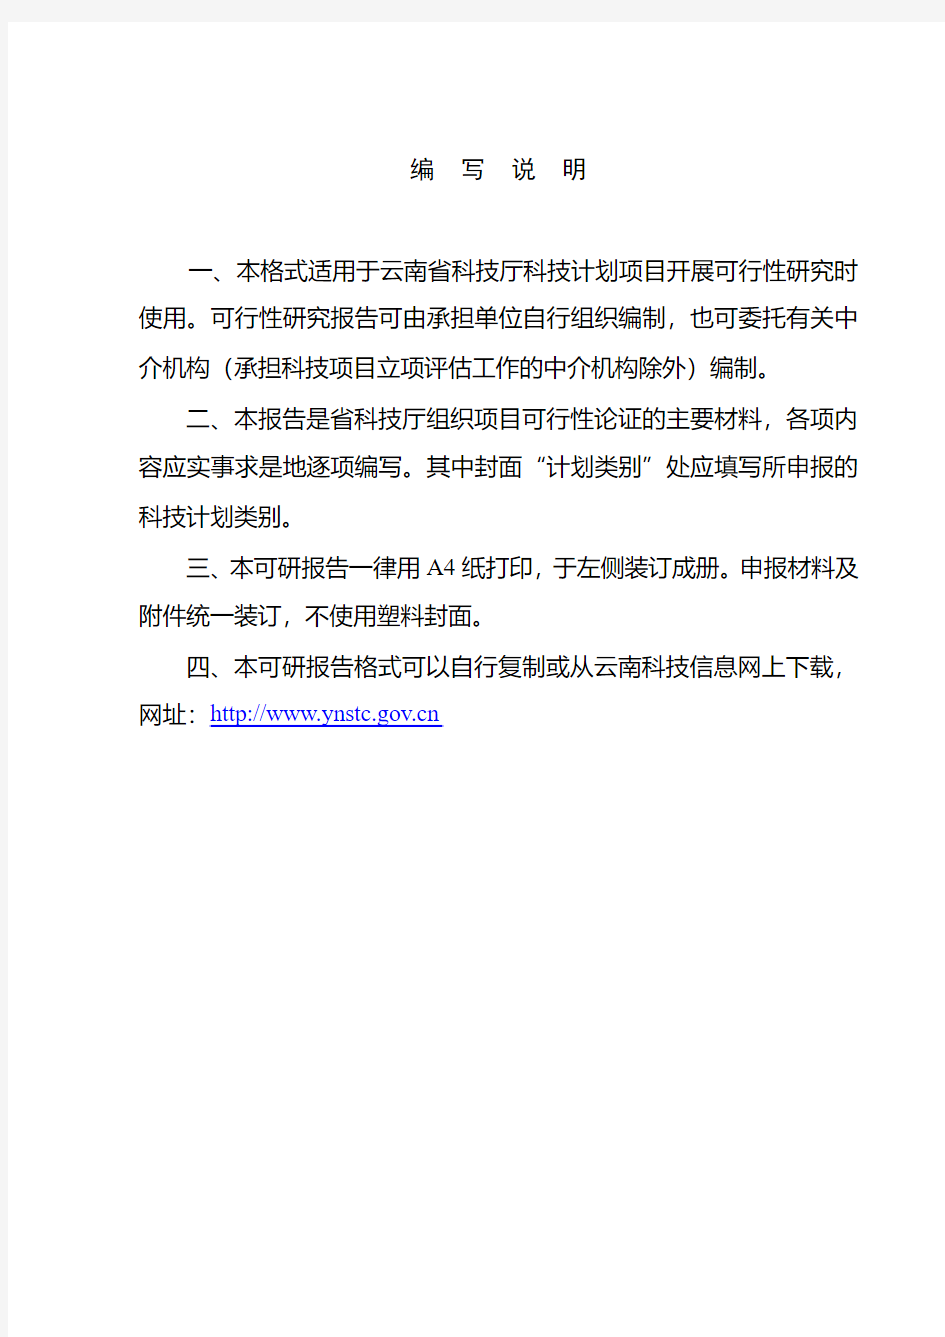 云南省科技计划项目可行性研究报告(格式)概述